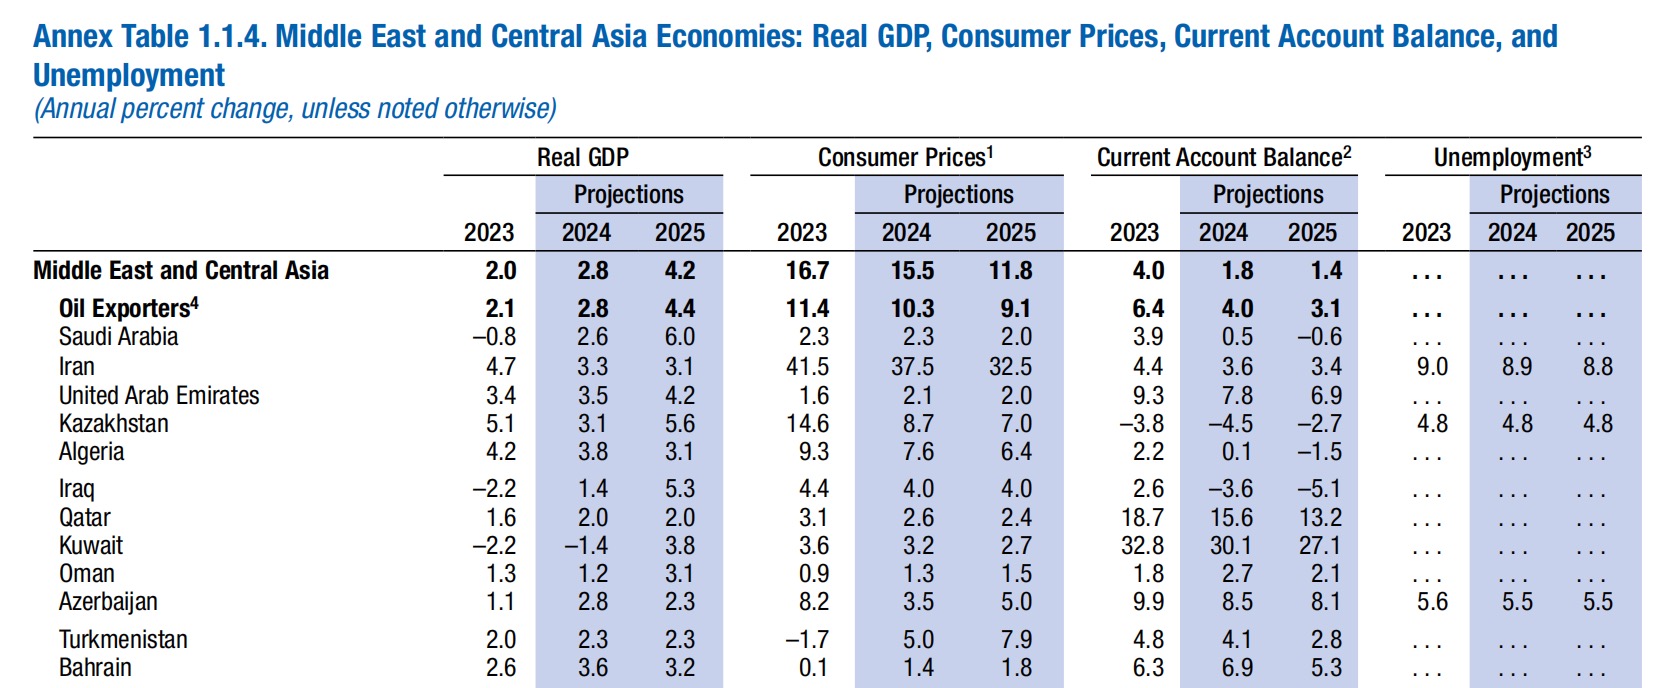 注：中东和中亚经济体实际 GDP、消费价格、经常账户余额和失业率预测值 来源：IMF